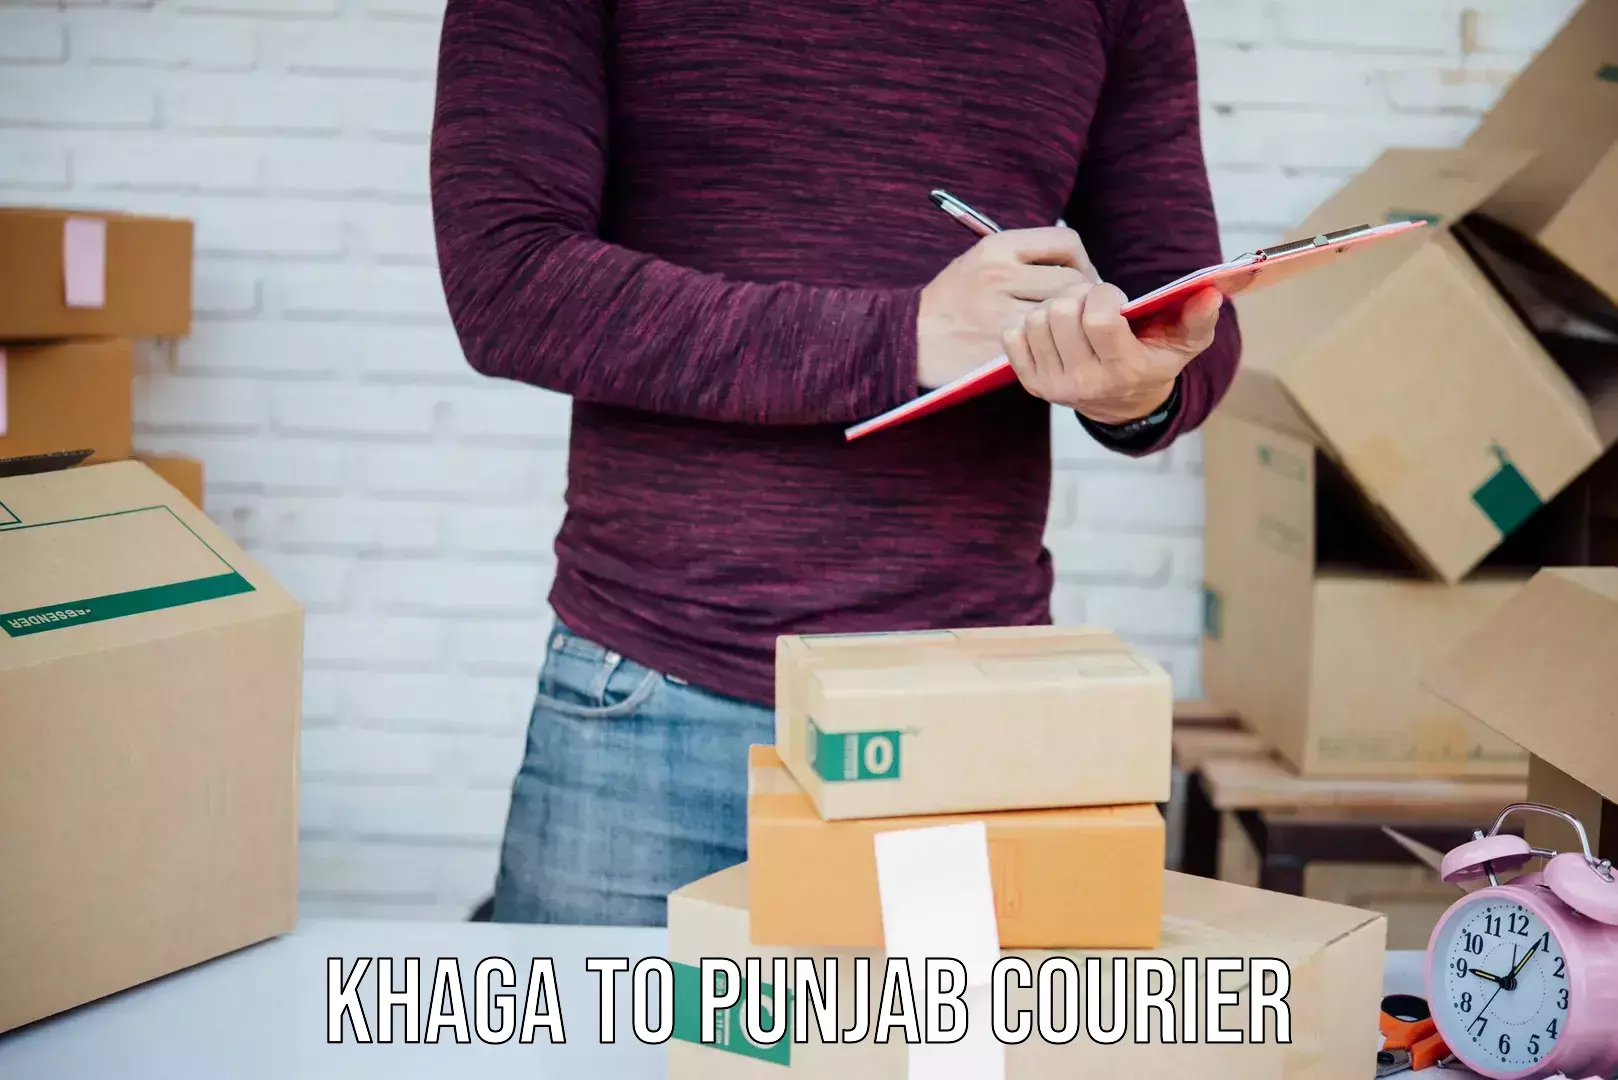 Reliable parcel services Khaga to Patiala